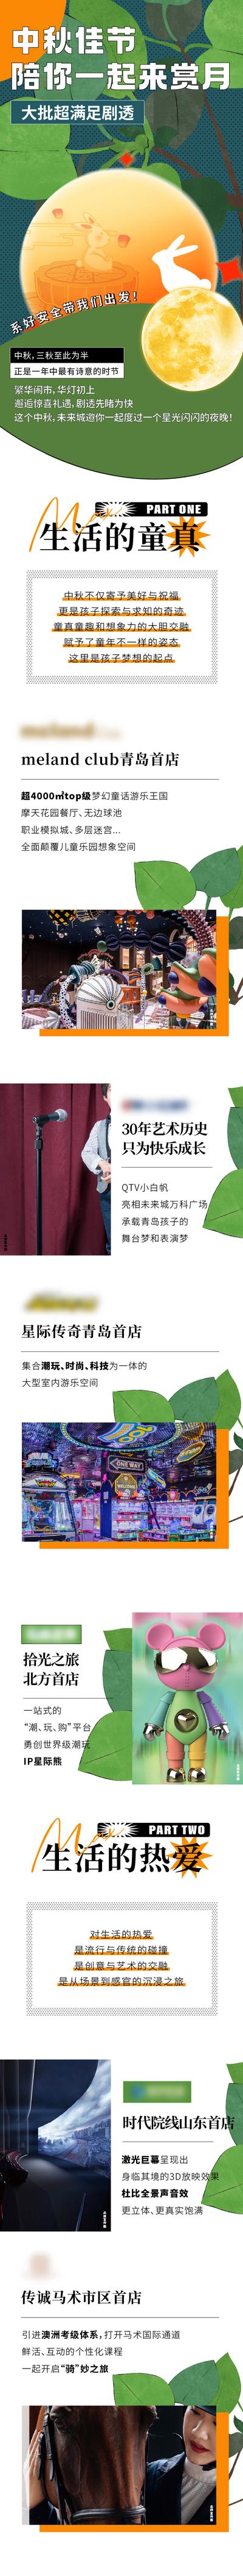 南门网 海报 长图 中国传统节日 中秋节 活动 品牌 商业